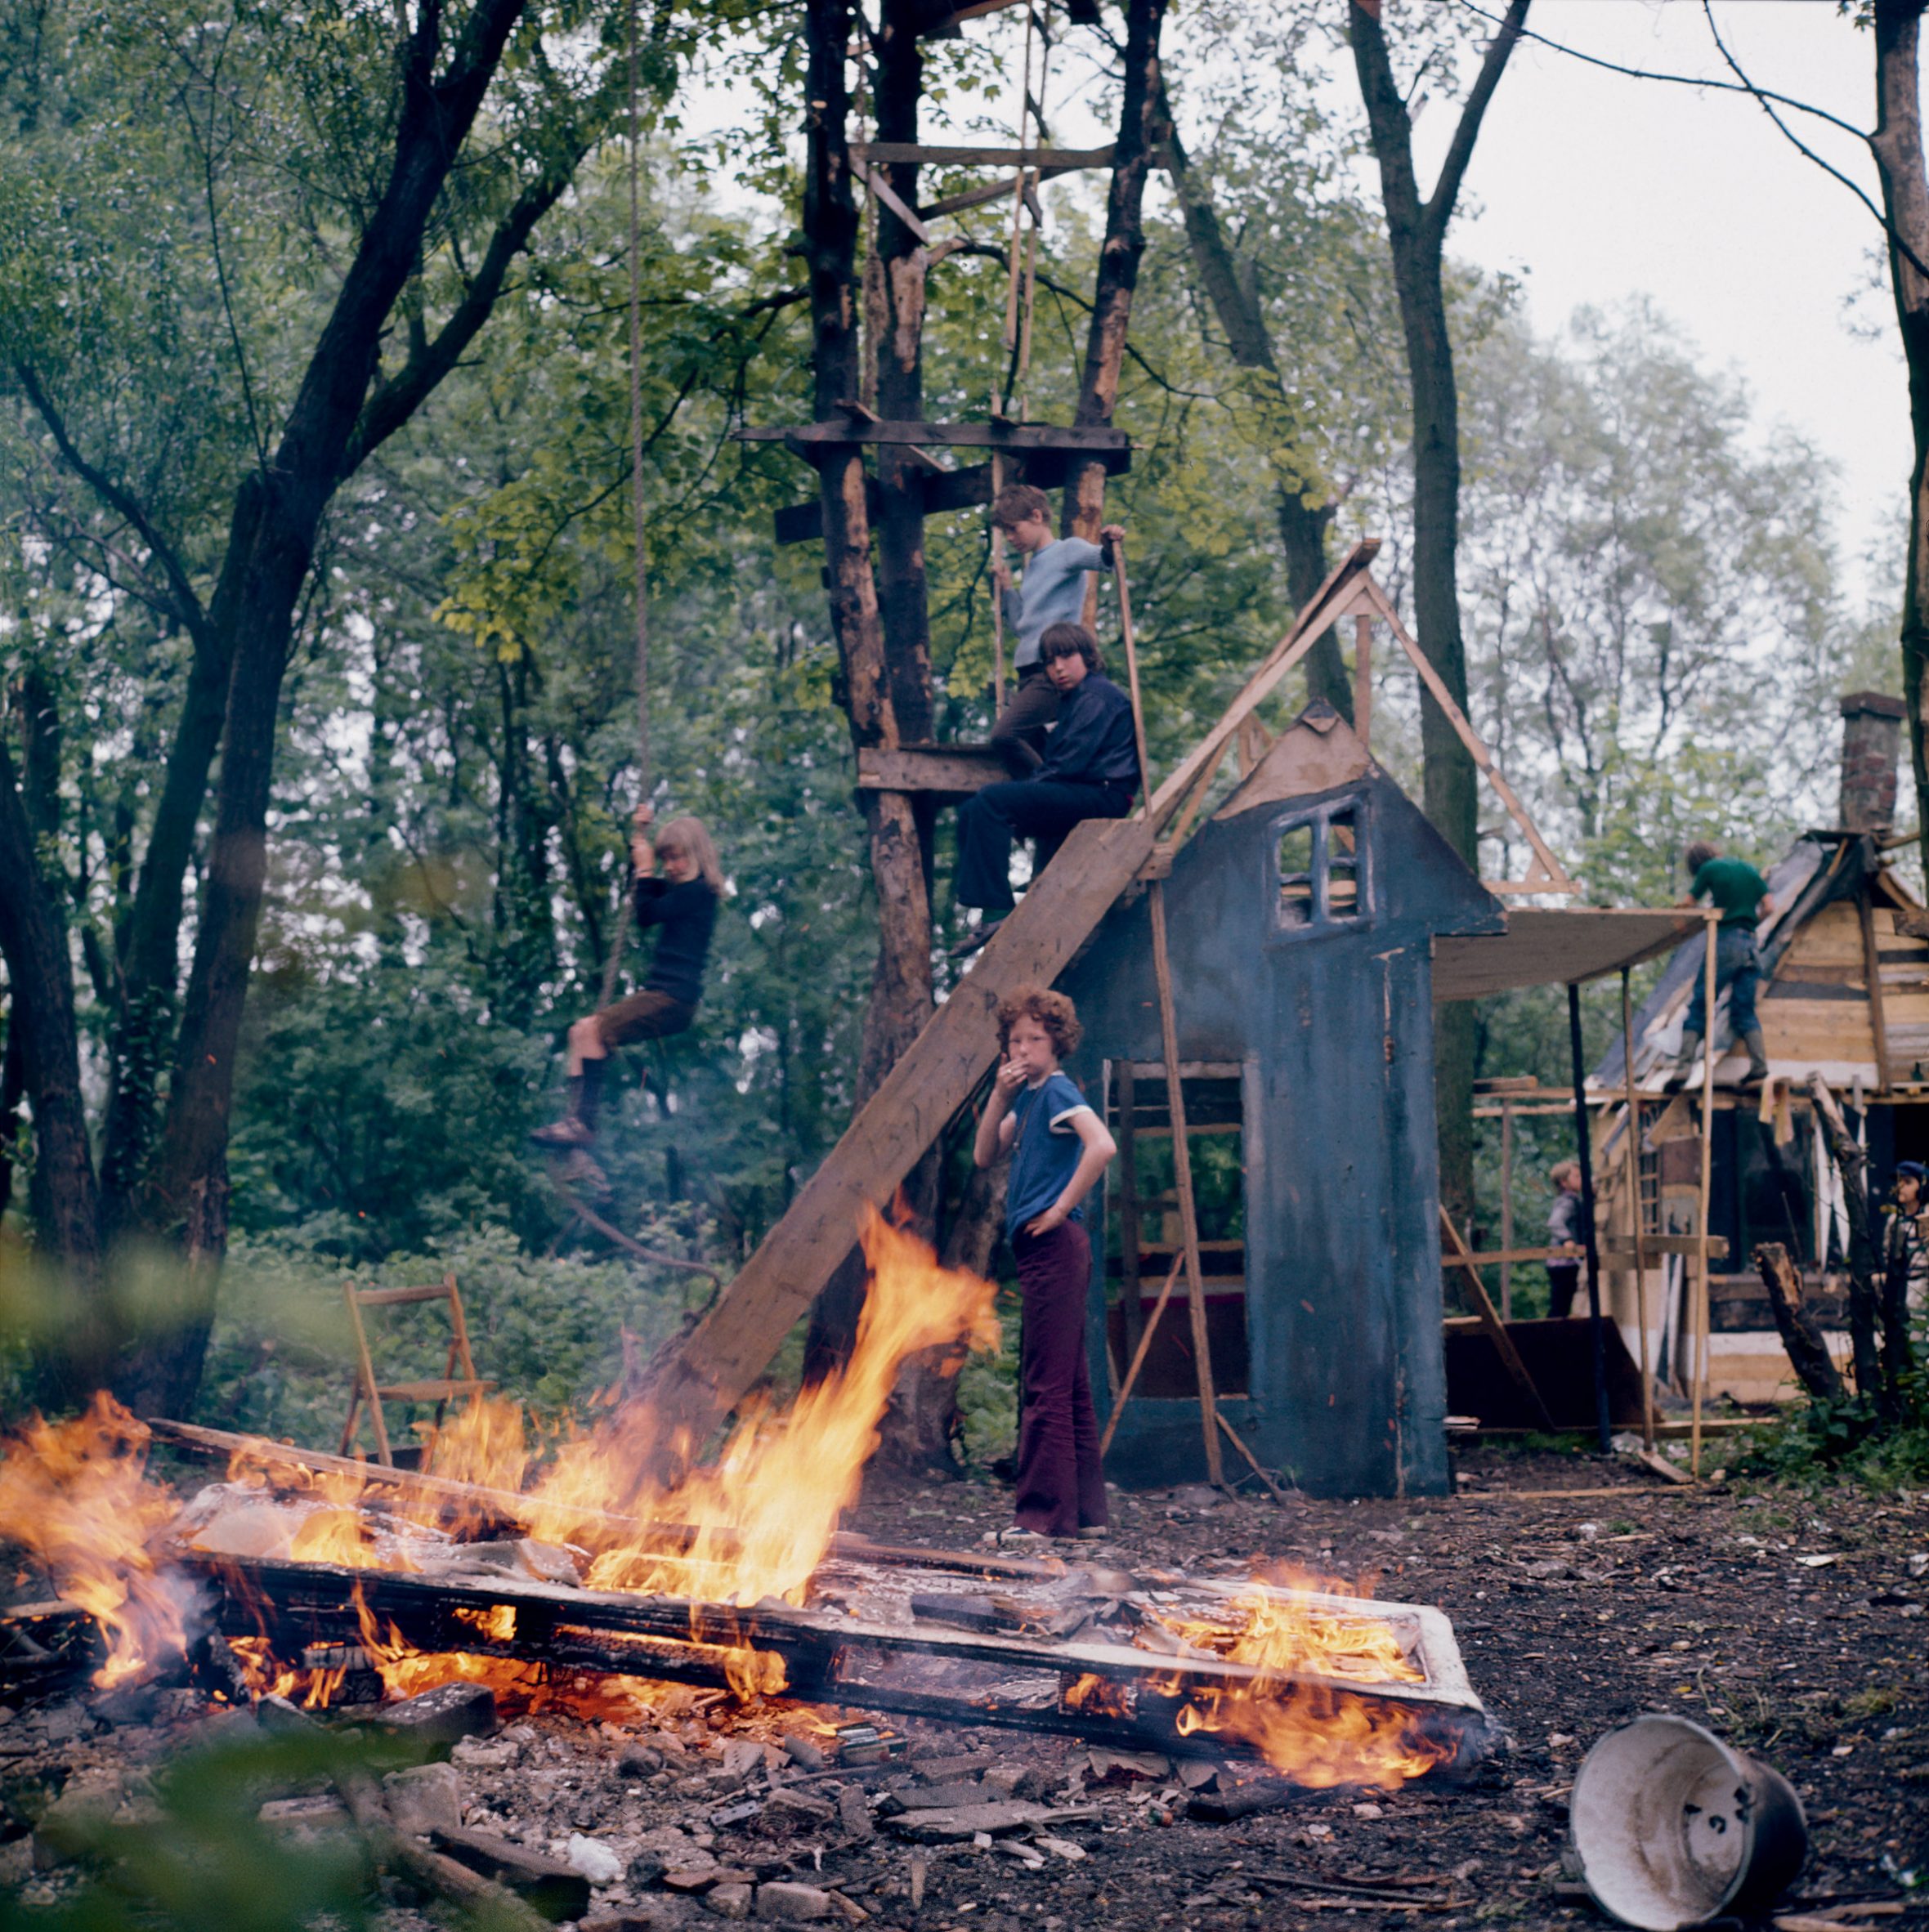 Making bonfires in Jongensland, photographed by Ursula Schulz-Dornburg